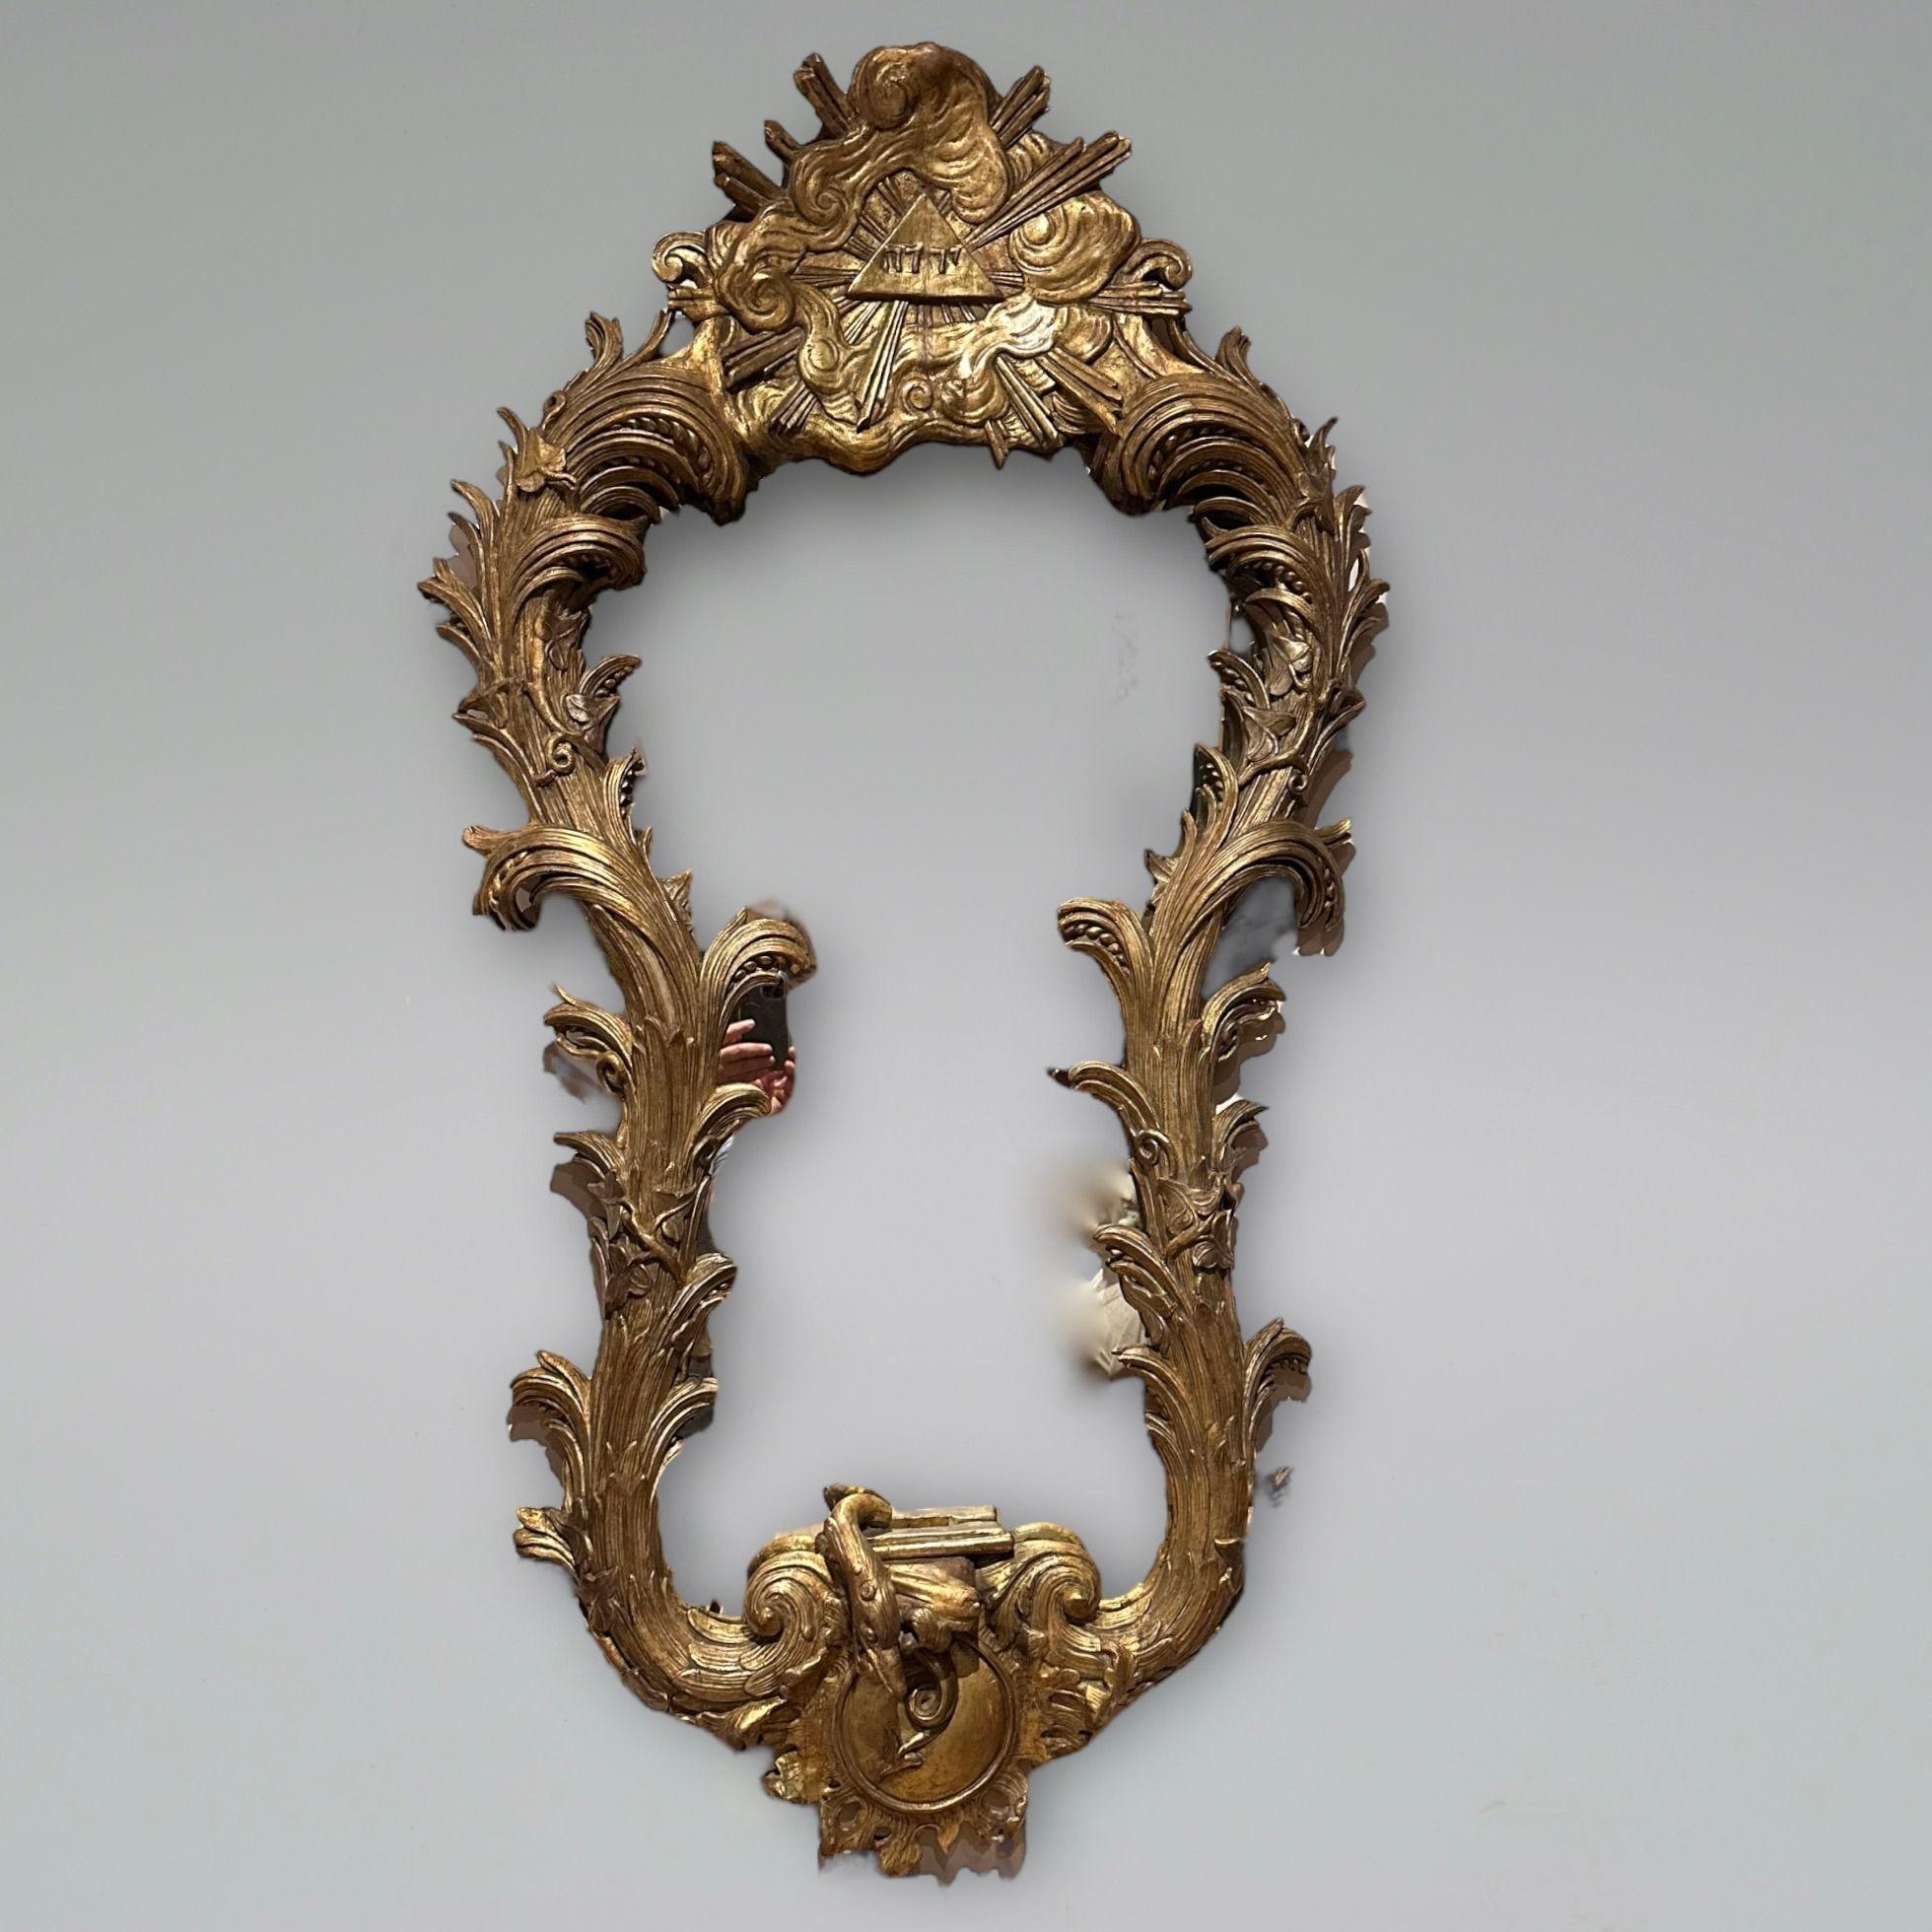 Miroir de bonne taille en bois doré sculpté du XVIIIe siècle, avec un motif hébraïque entouré de nuages et d'un rayon de soleil, la plaque façonnée avec des feuilles d'acanthe profondément sculptées et un serpent en dessous. 
Circa 1770